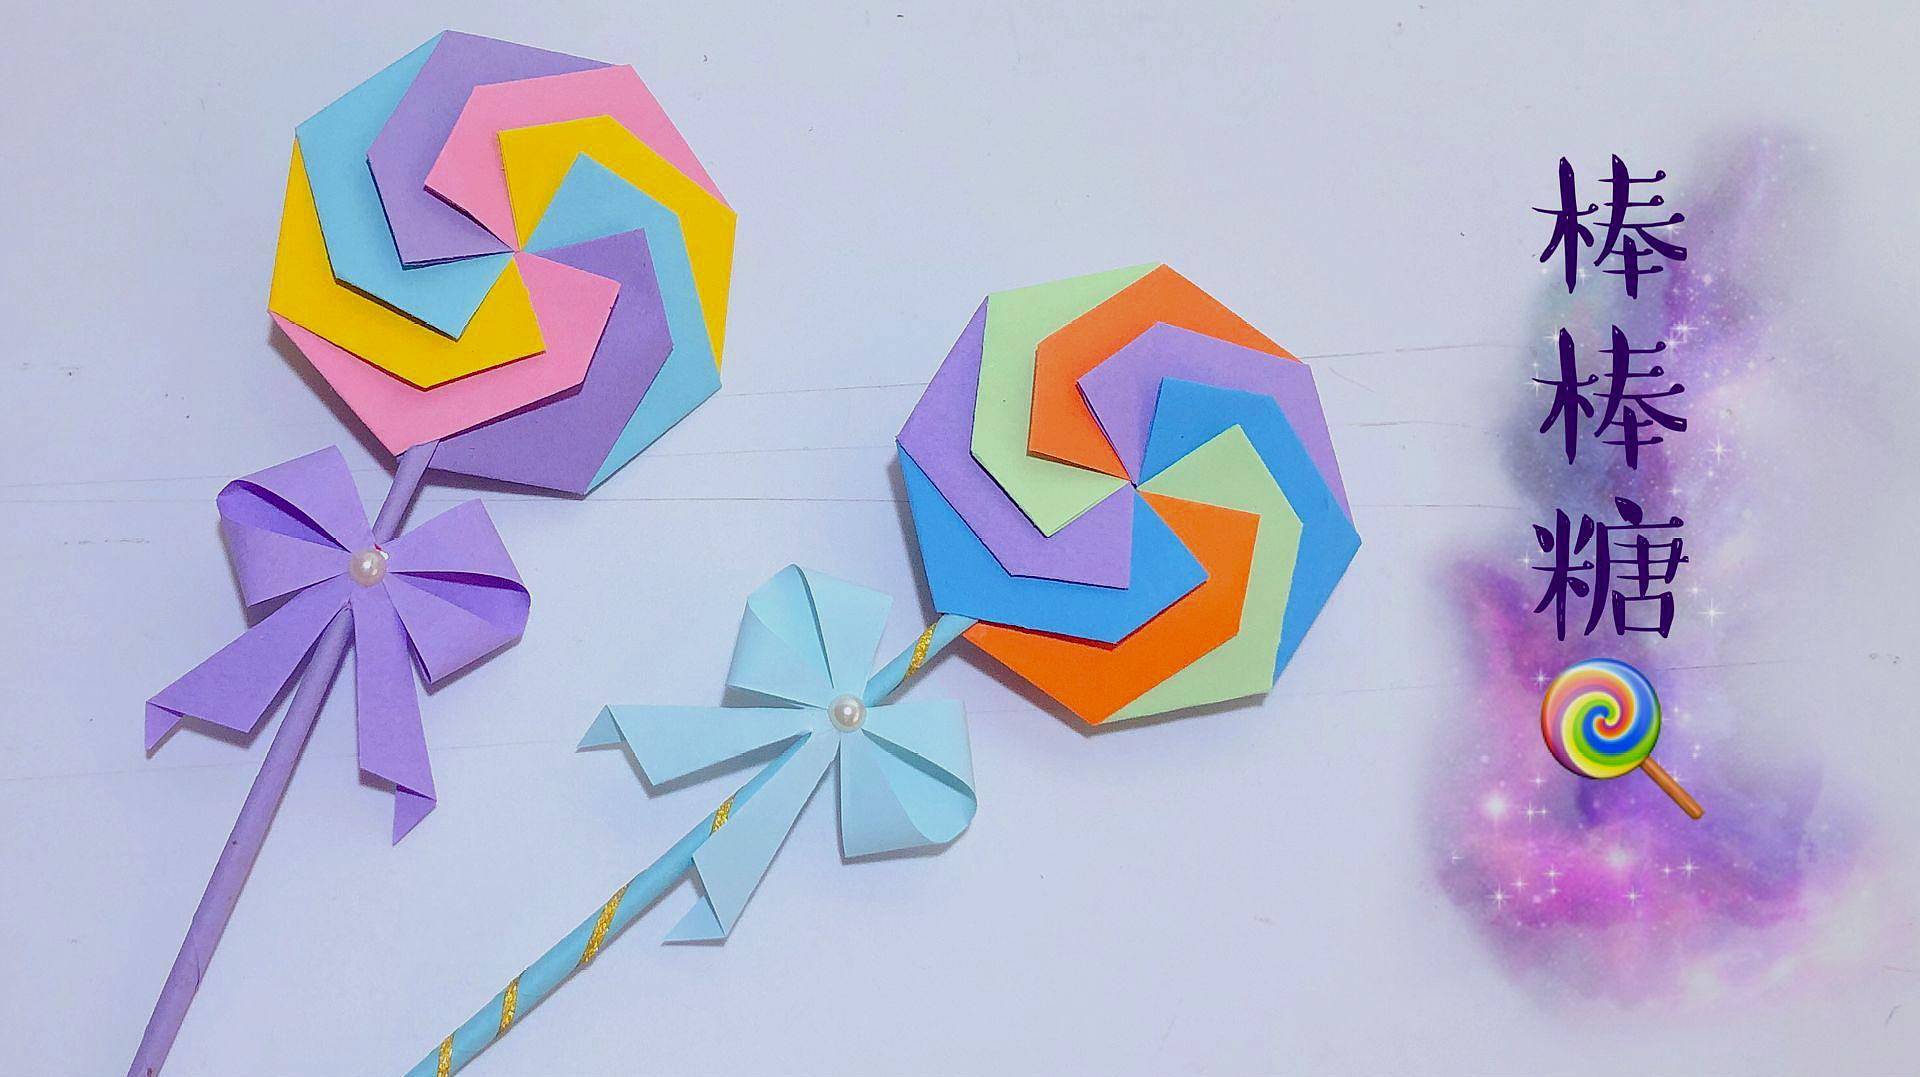 折纸教程:可爱的棒棒糖折纸,漂亮还简单,小朋友太喜欢了